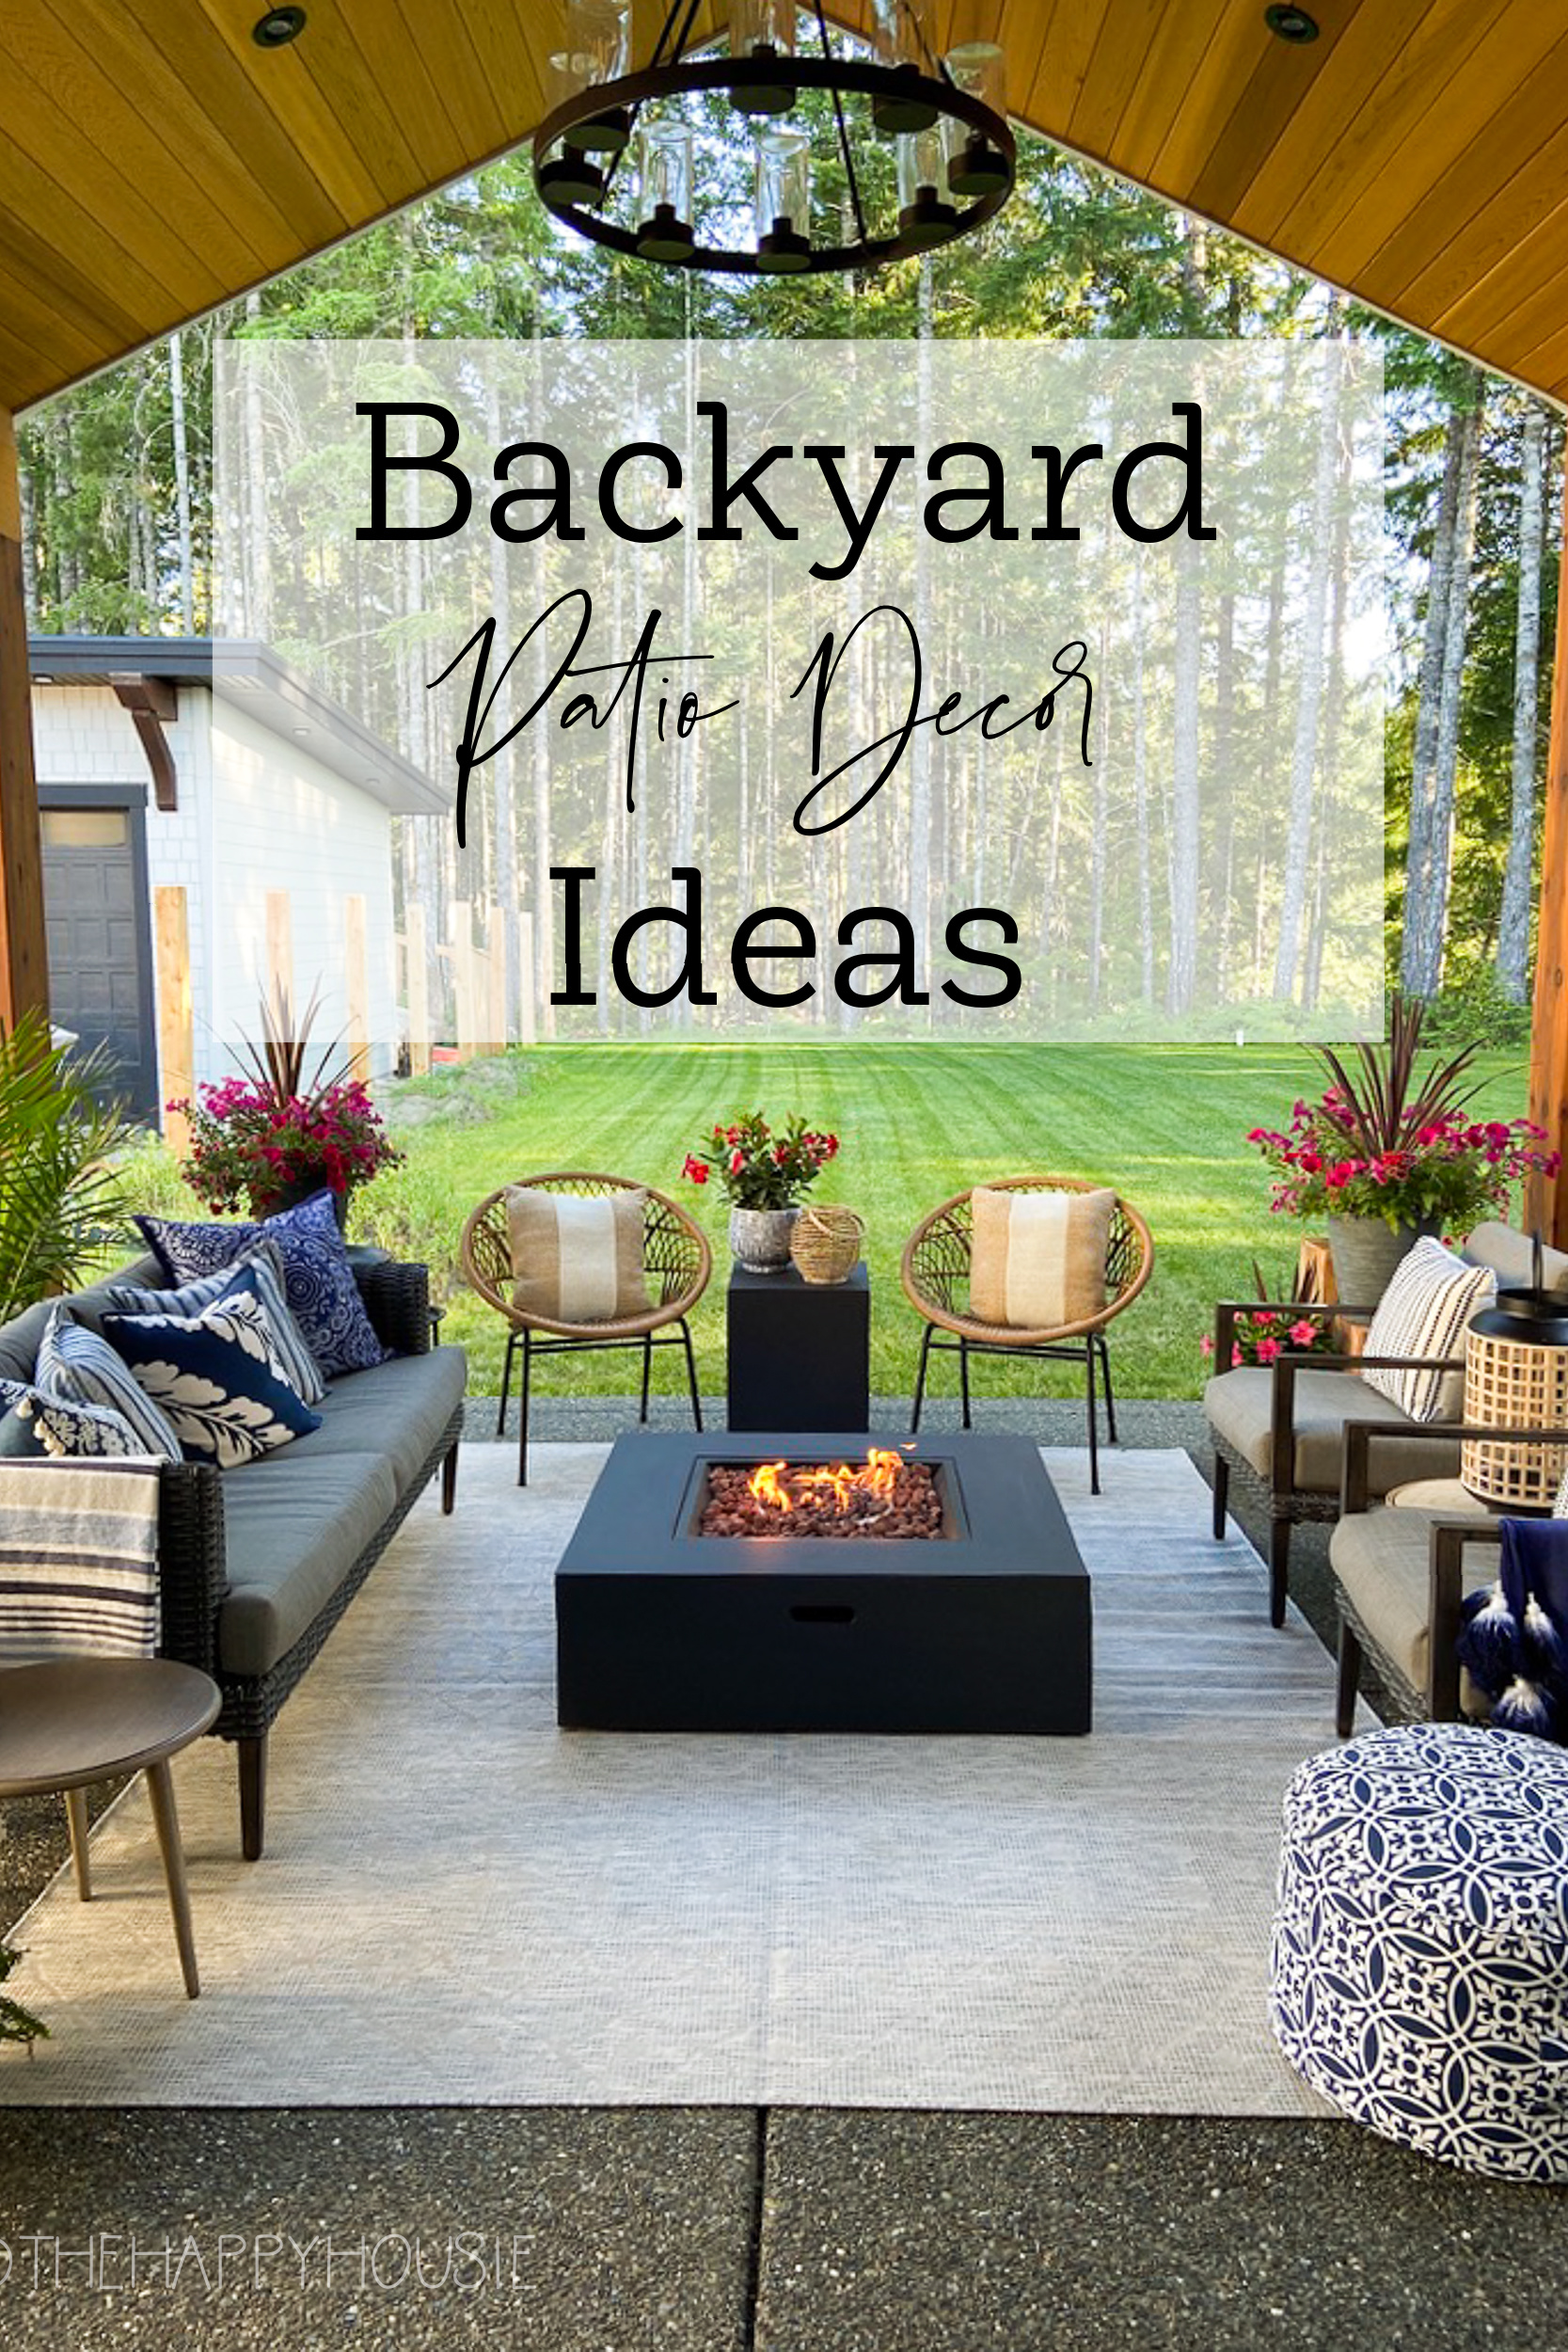 Backyard Patio Decor Ideas poster.